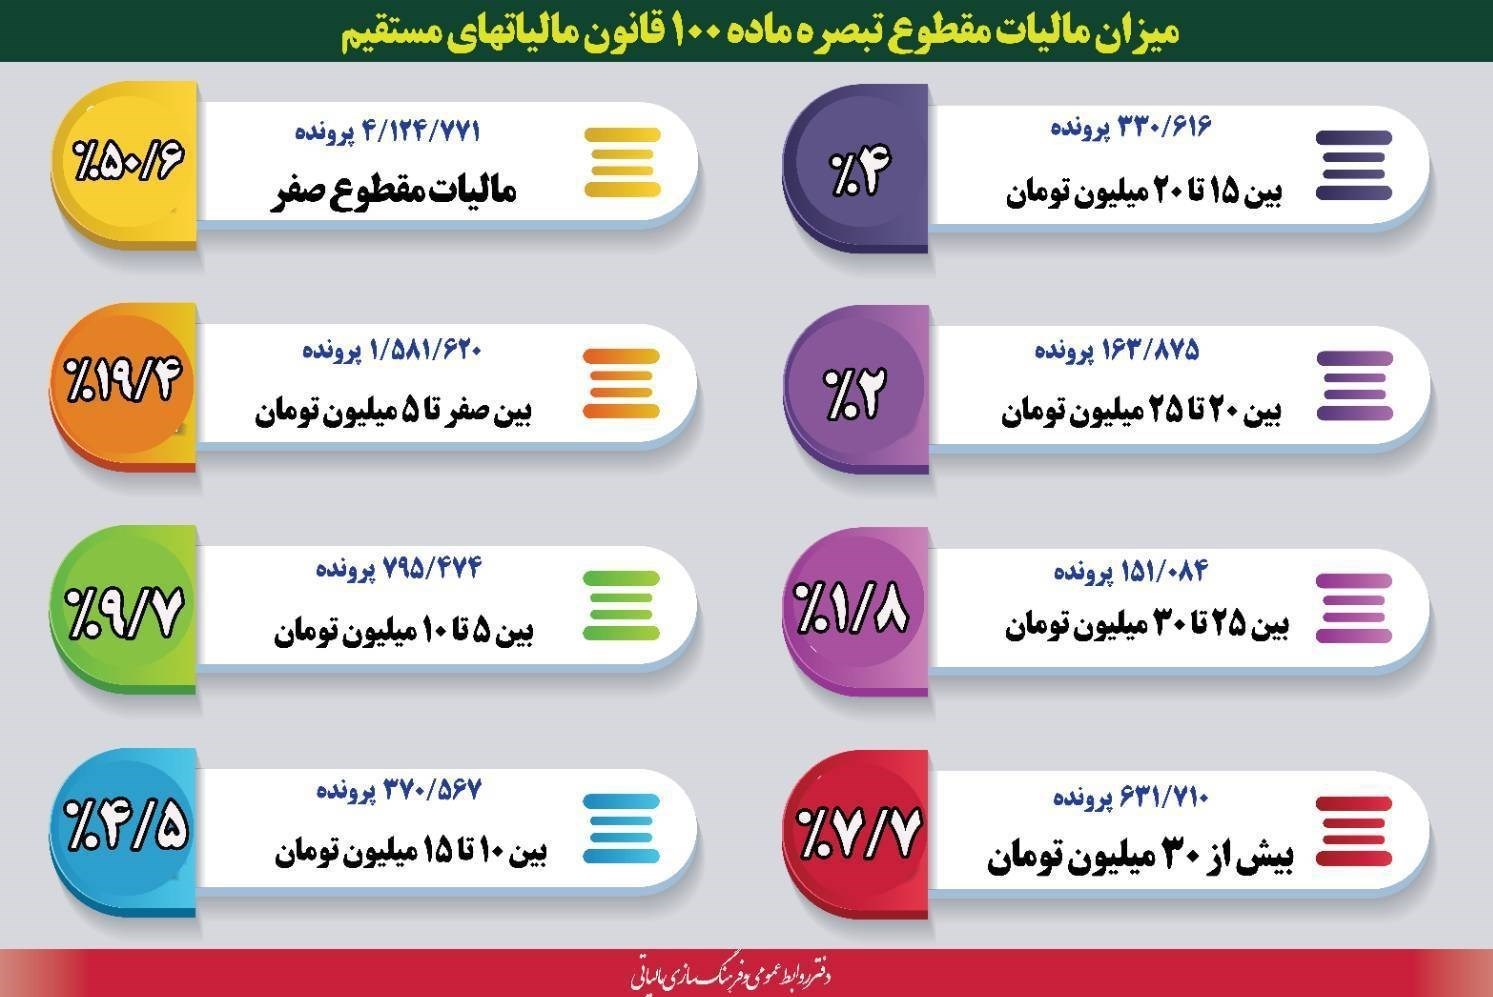 جزئیات مالیات پرداختی مودیان تبصره ماده ۱۰۰+ چرا کاسب های تهرانی اینقدر می نالند جناب رئیس سازمان مالیاتی؟